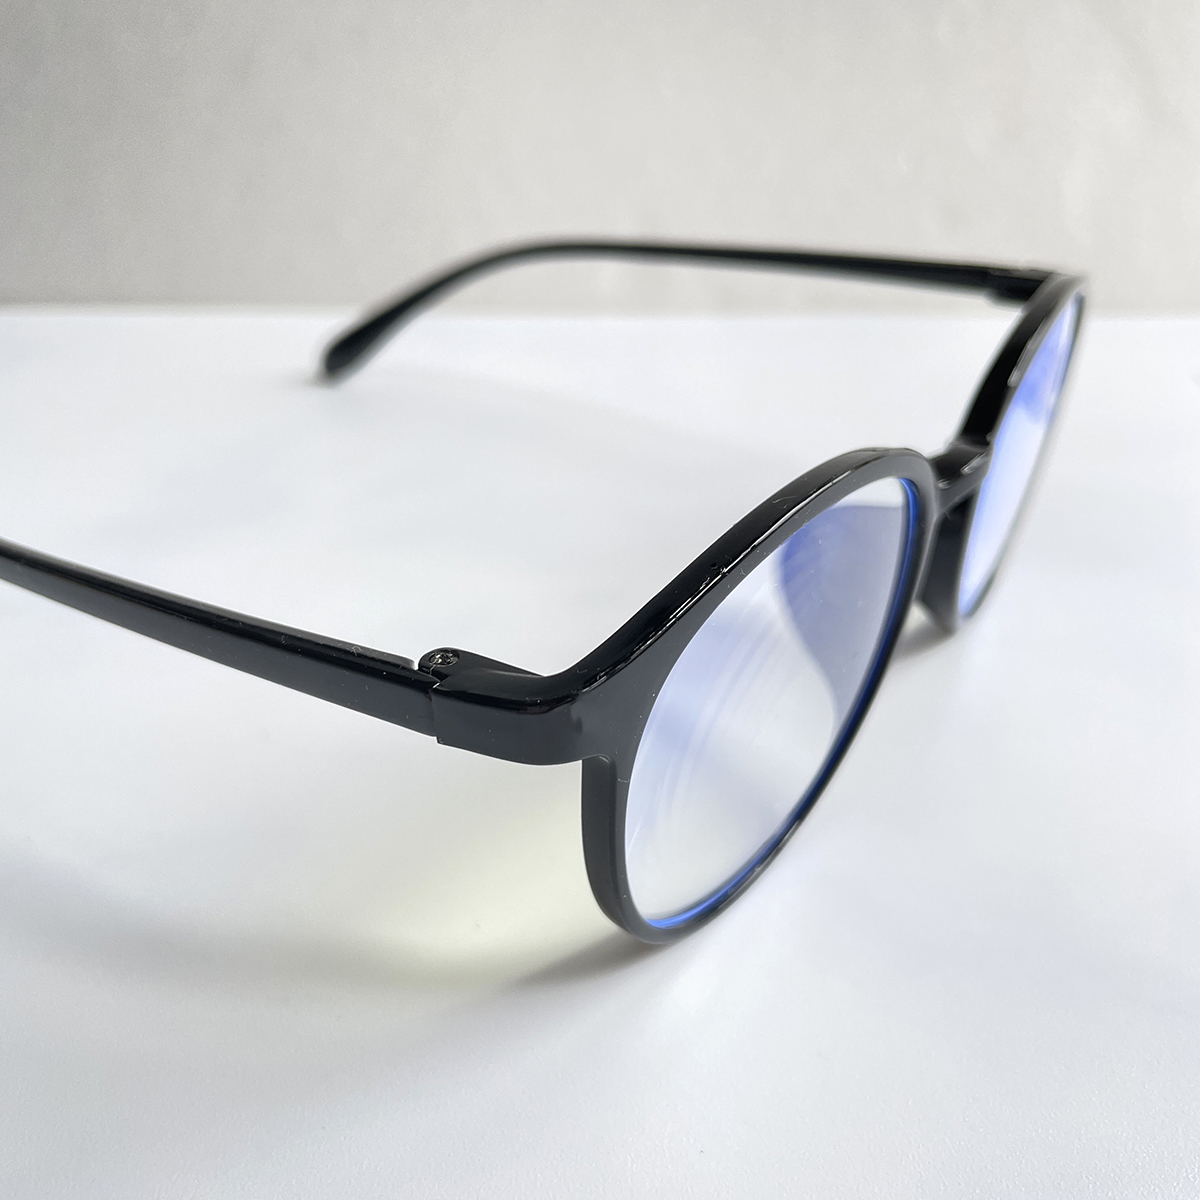  очки для чтения  +1.5  Бостон   простой   черный   черный ...    ...  легкий (по весу)   очки для чтения 